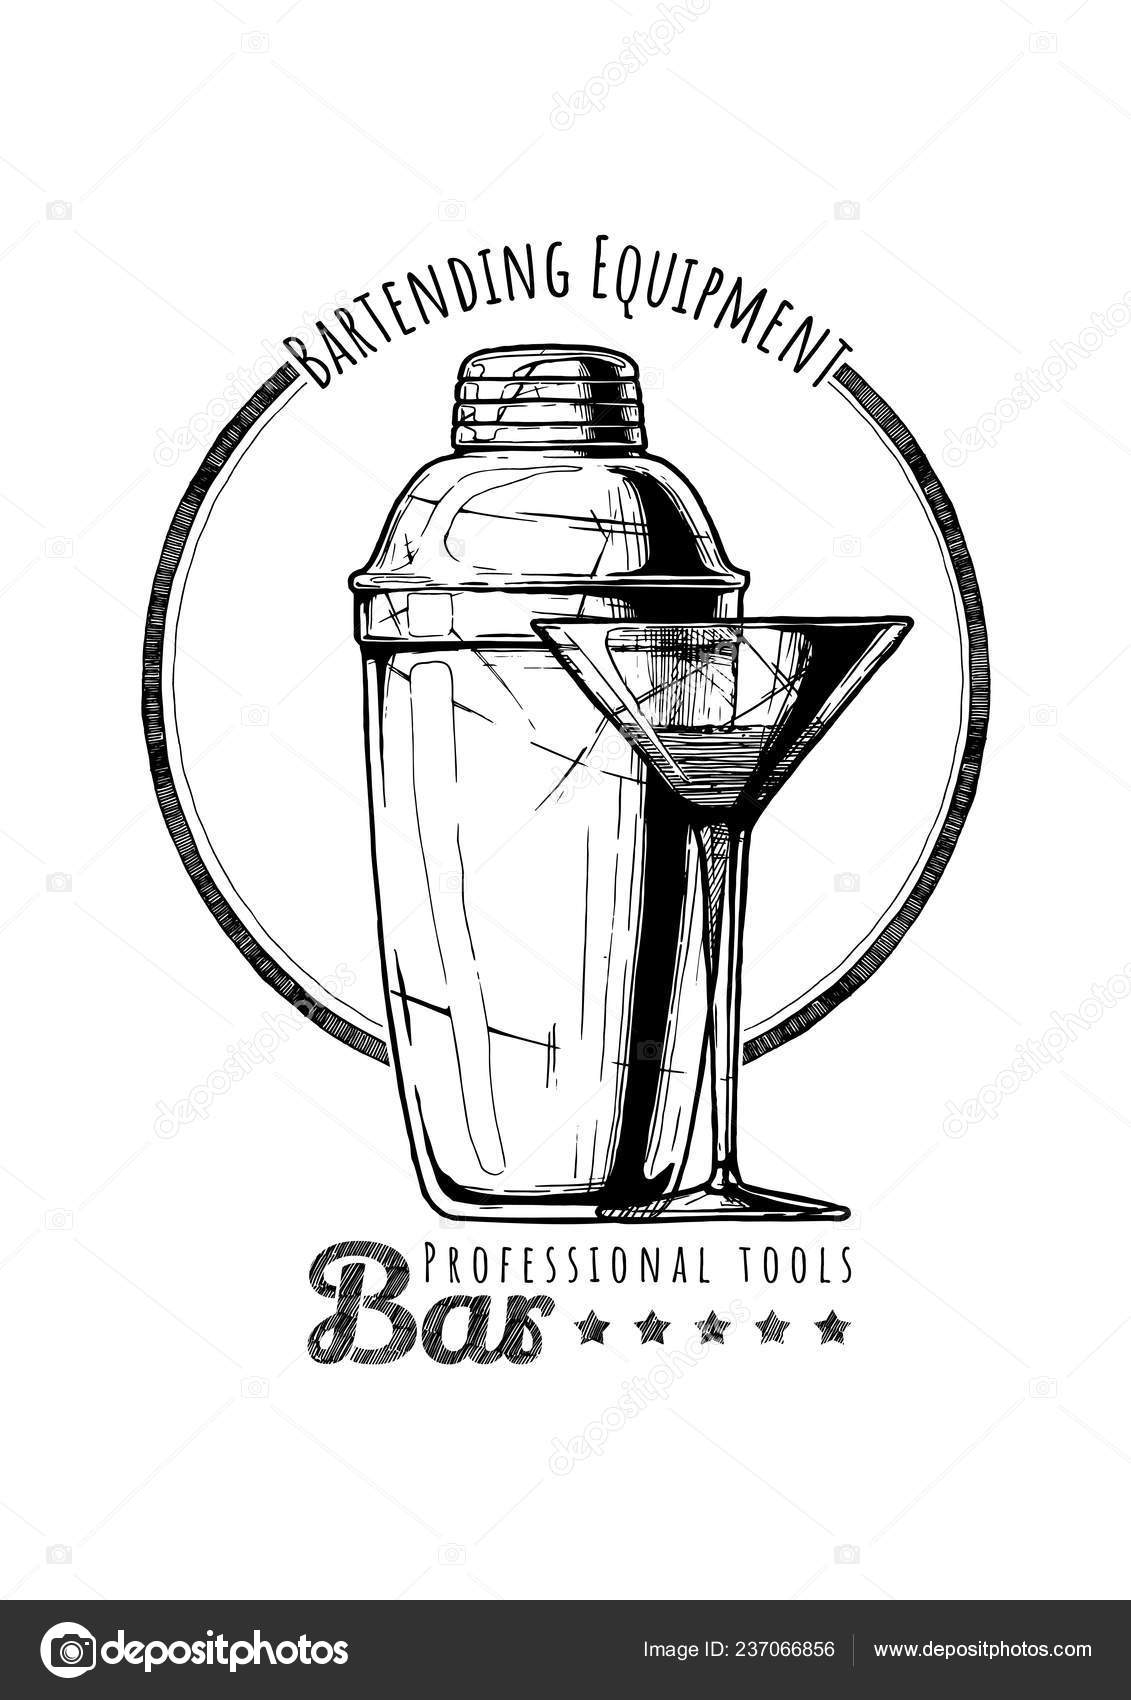 https://st4.depositphotos.com/1247246/23706/v/1600/depositphotos_237066856-stock-illustration-cobbler-shaker-cocktail-glass-logo.jpg